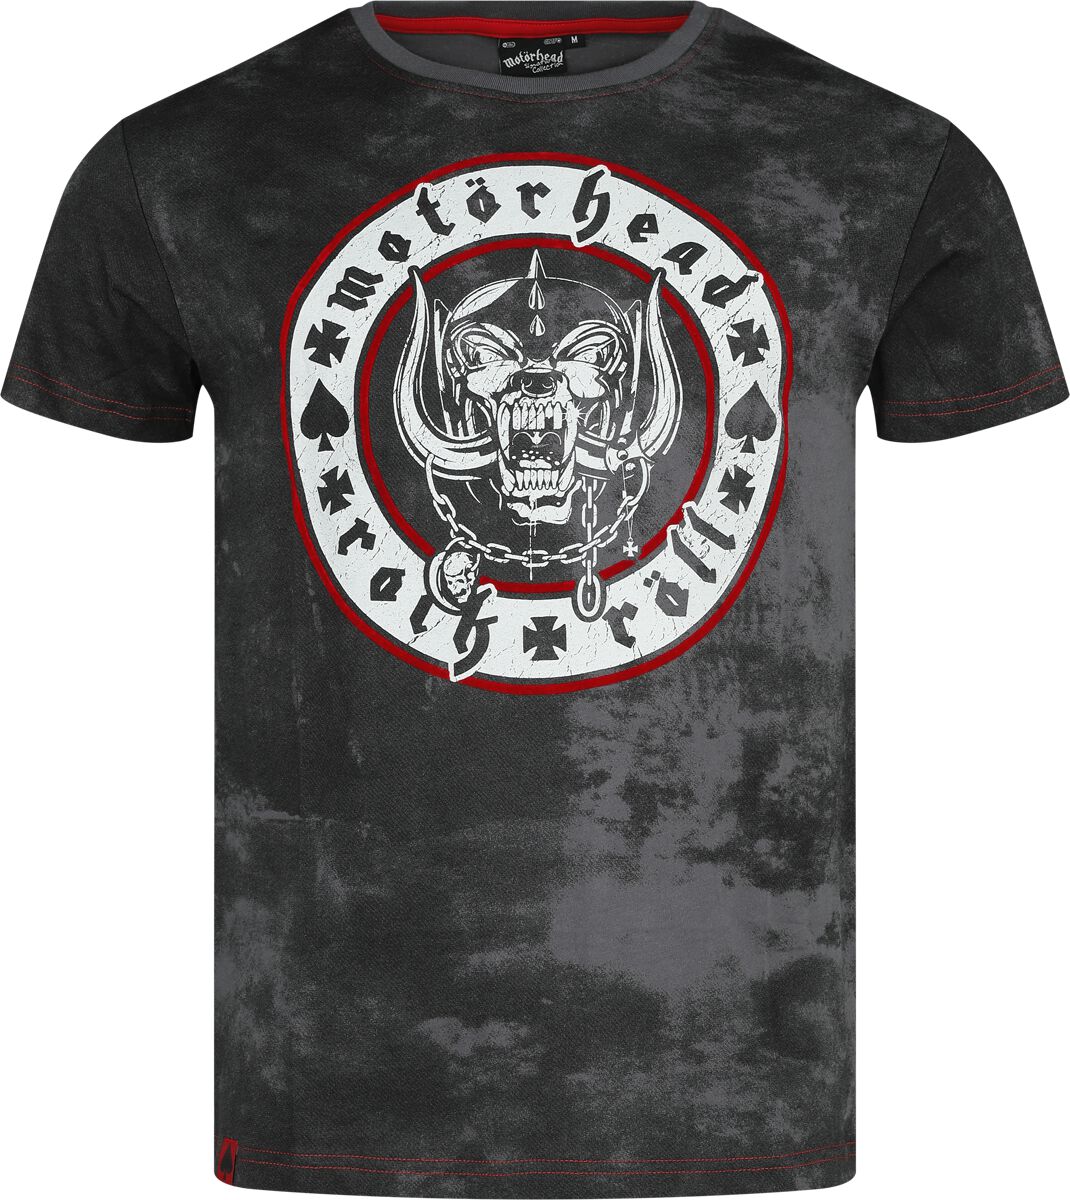 Motörhead T-Shirt - EMP Signature Collection - S bis 3XL - für Männer - Größe 3XL - grau/schwarz  - EMP exklusives Merchandise!